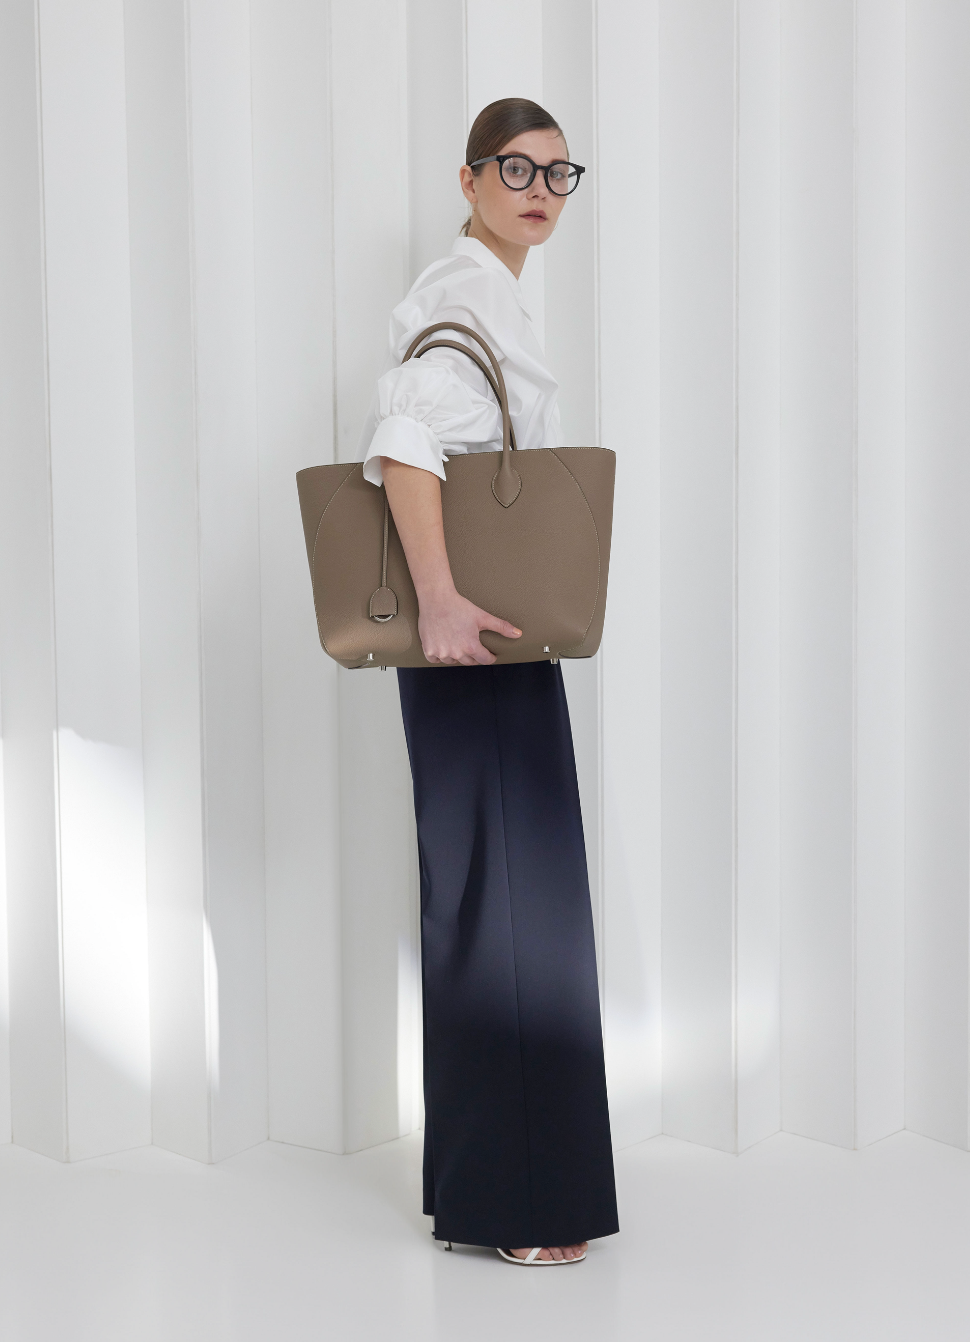 En affärskvinna bär den perfekta läderväskan för det dagliga kontorslivet